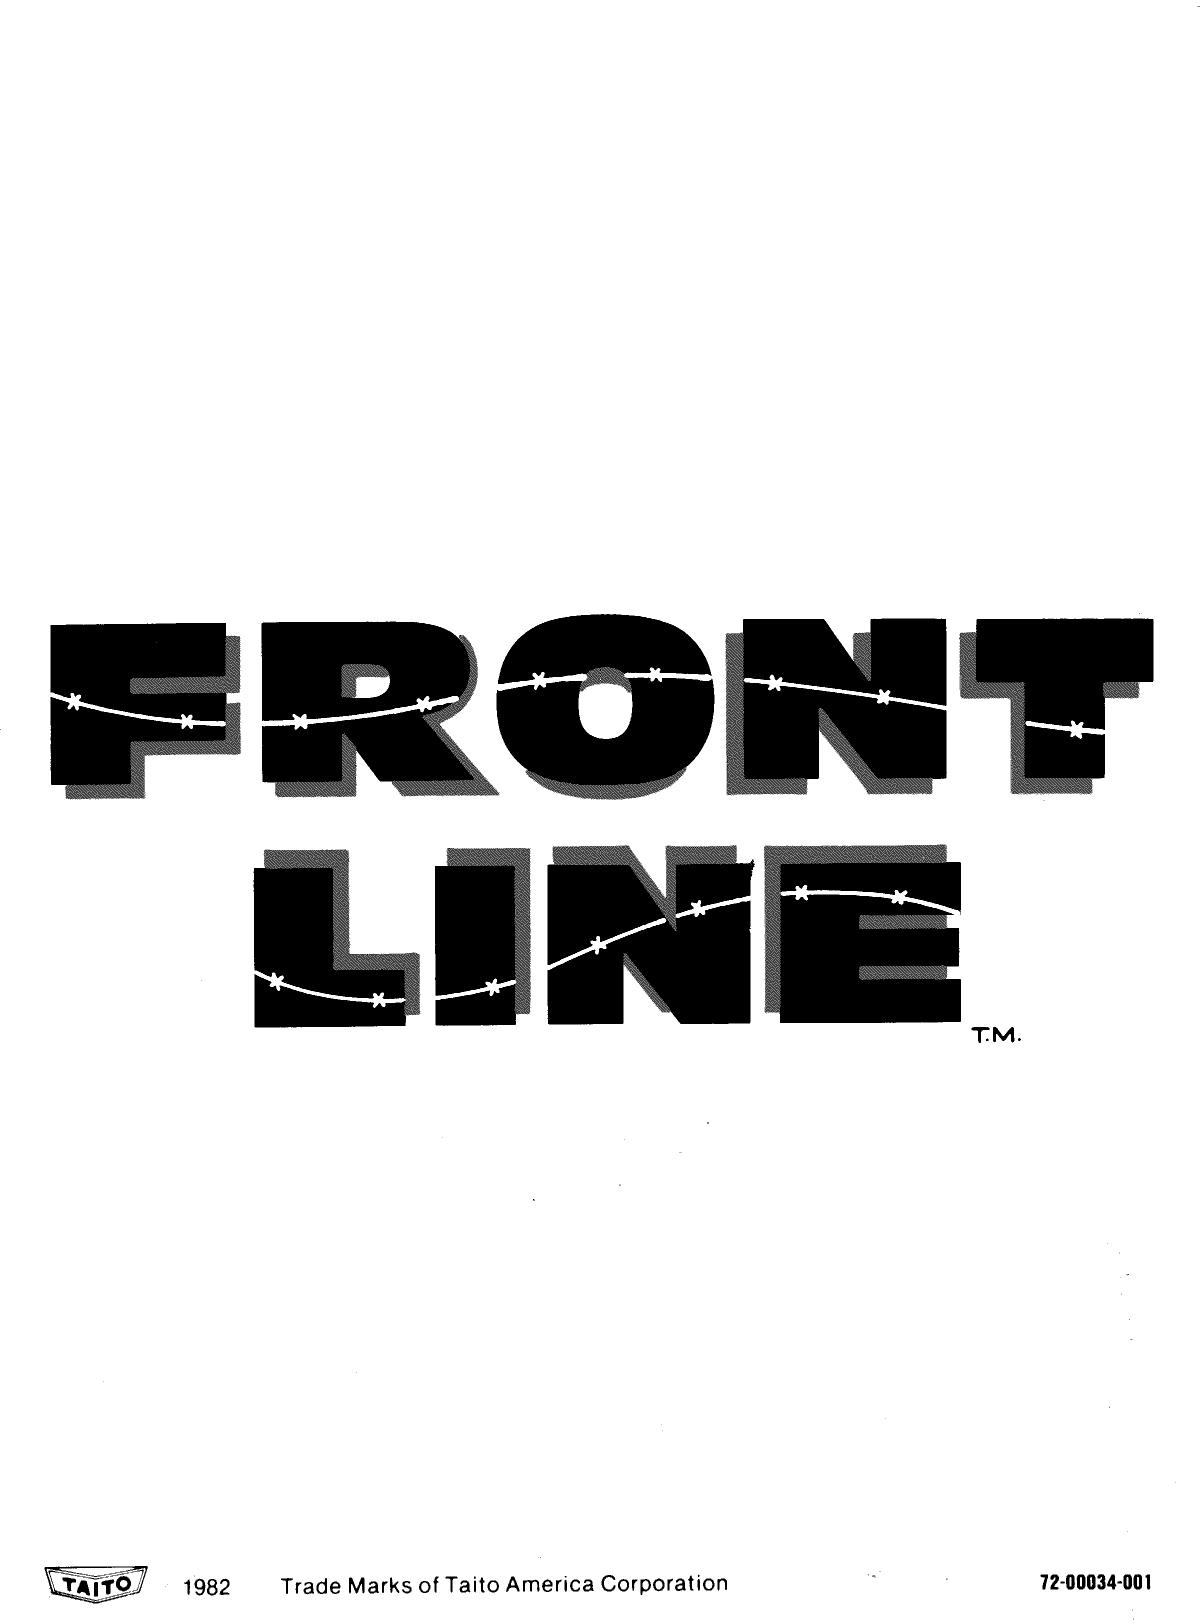 Frontline (Upright) (U)